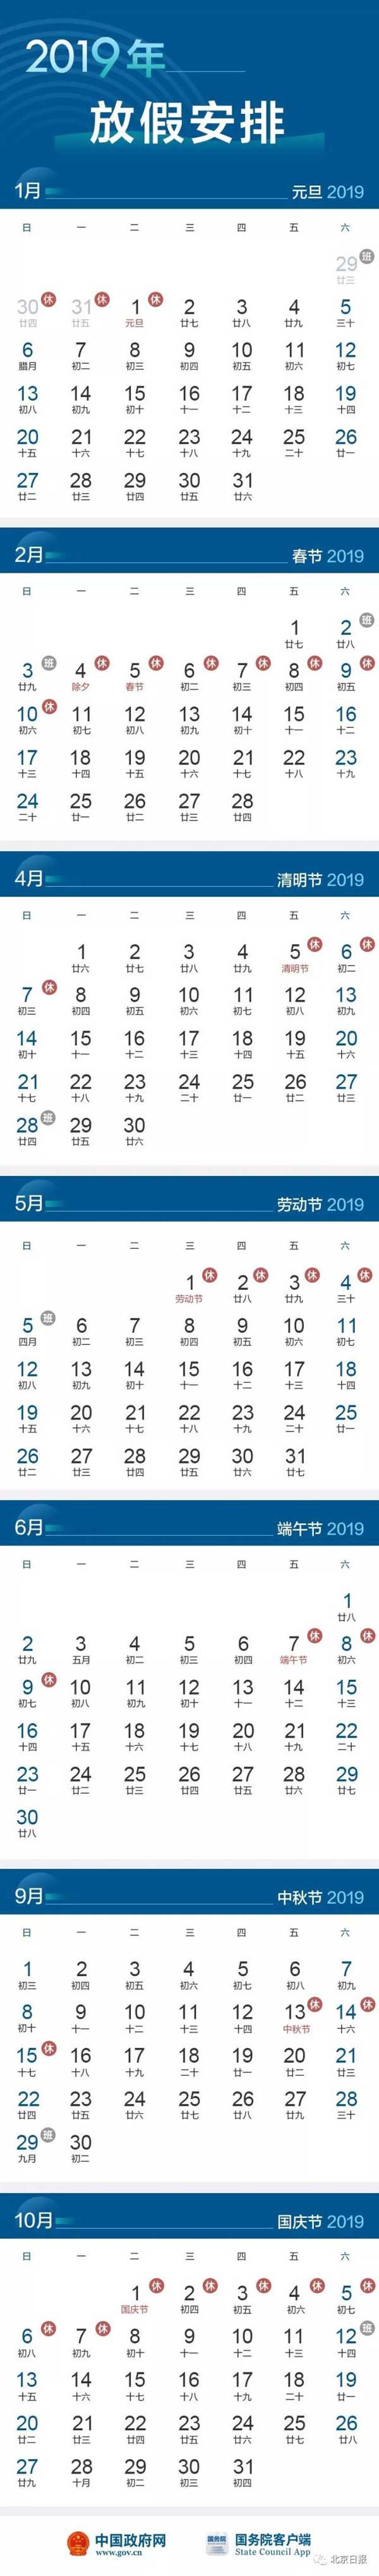 2019年法定节假日放假时间表